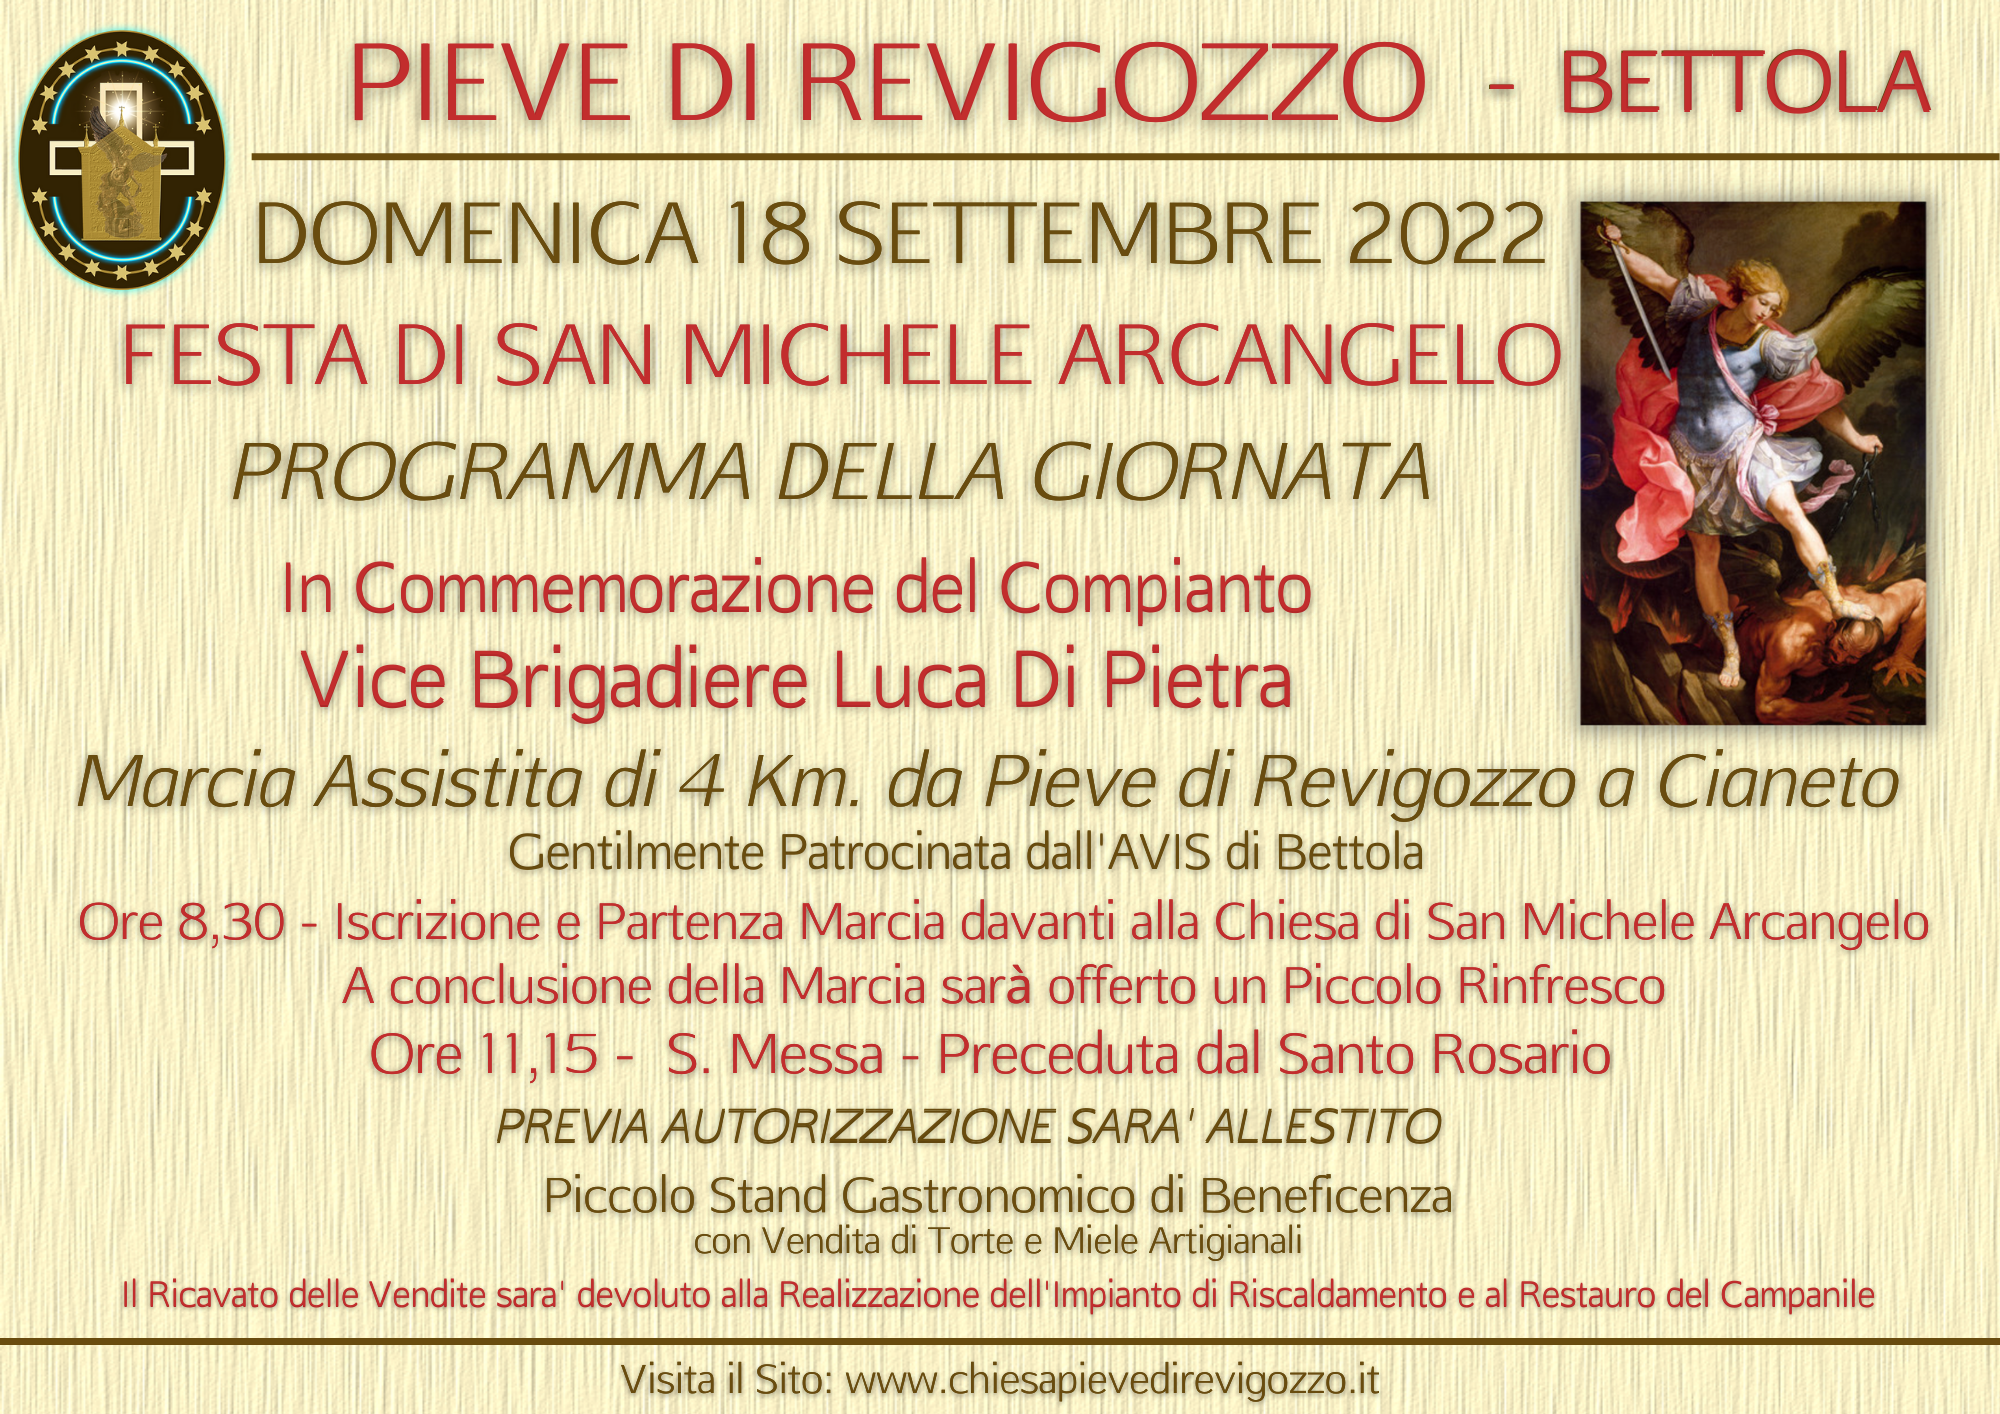 DOMENICA 18 SETTEMBRE 2022 - Si festeggia San Michele Arcangelo